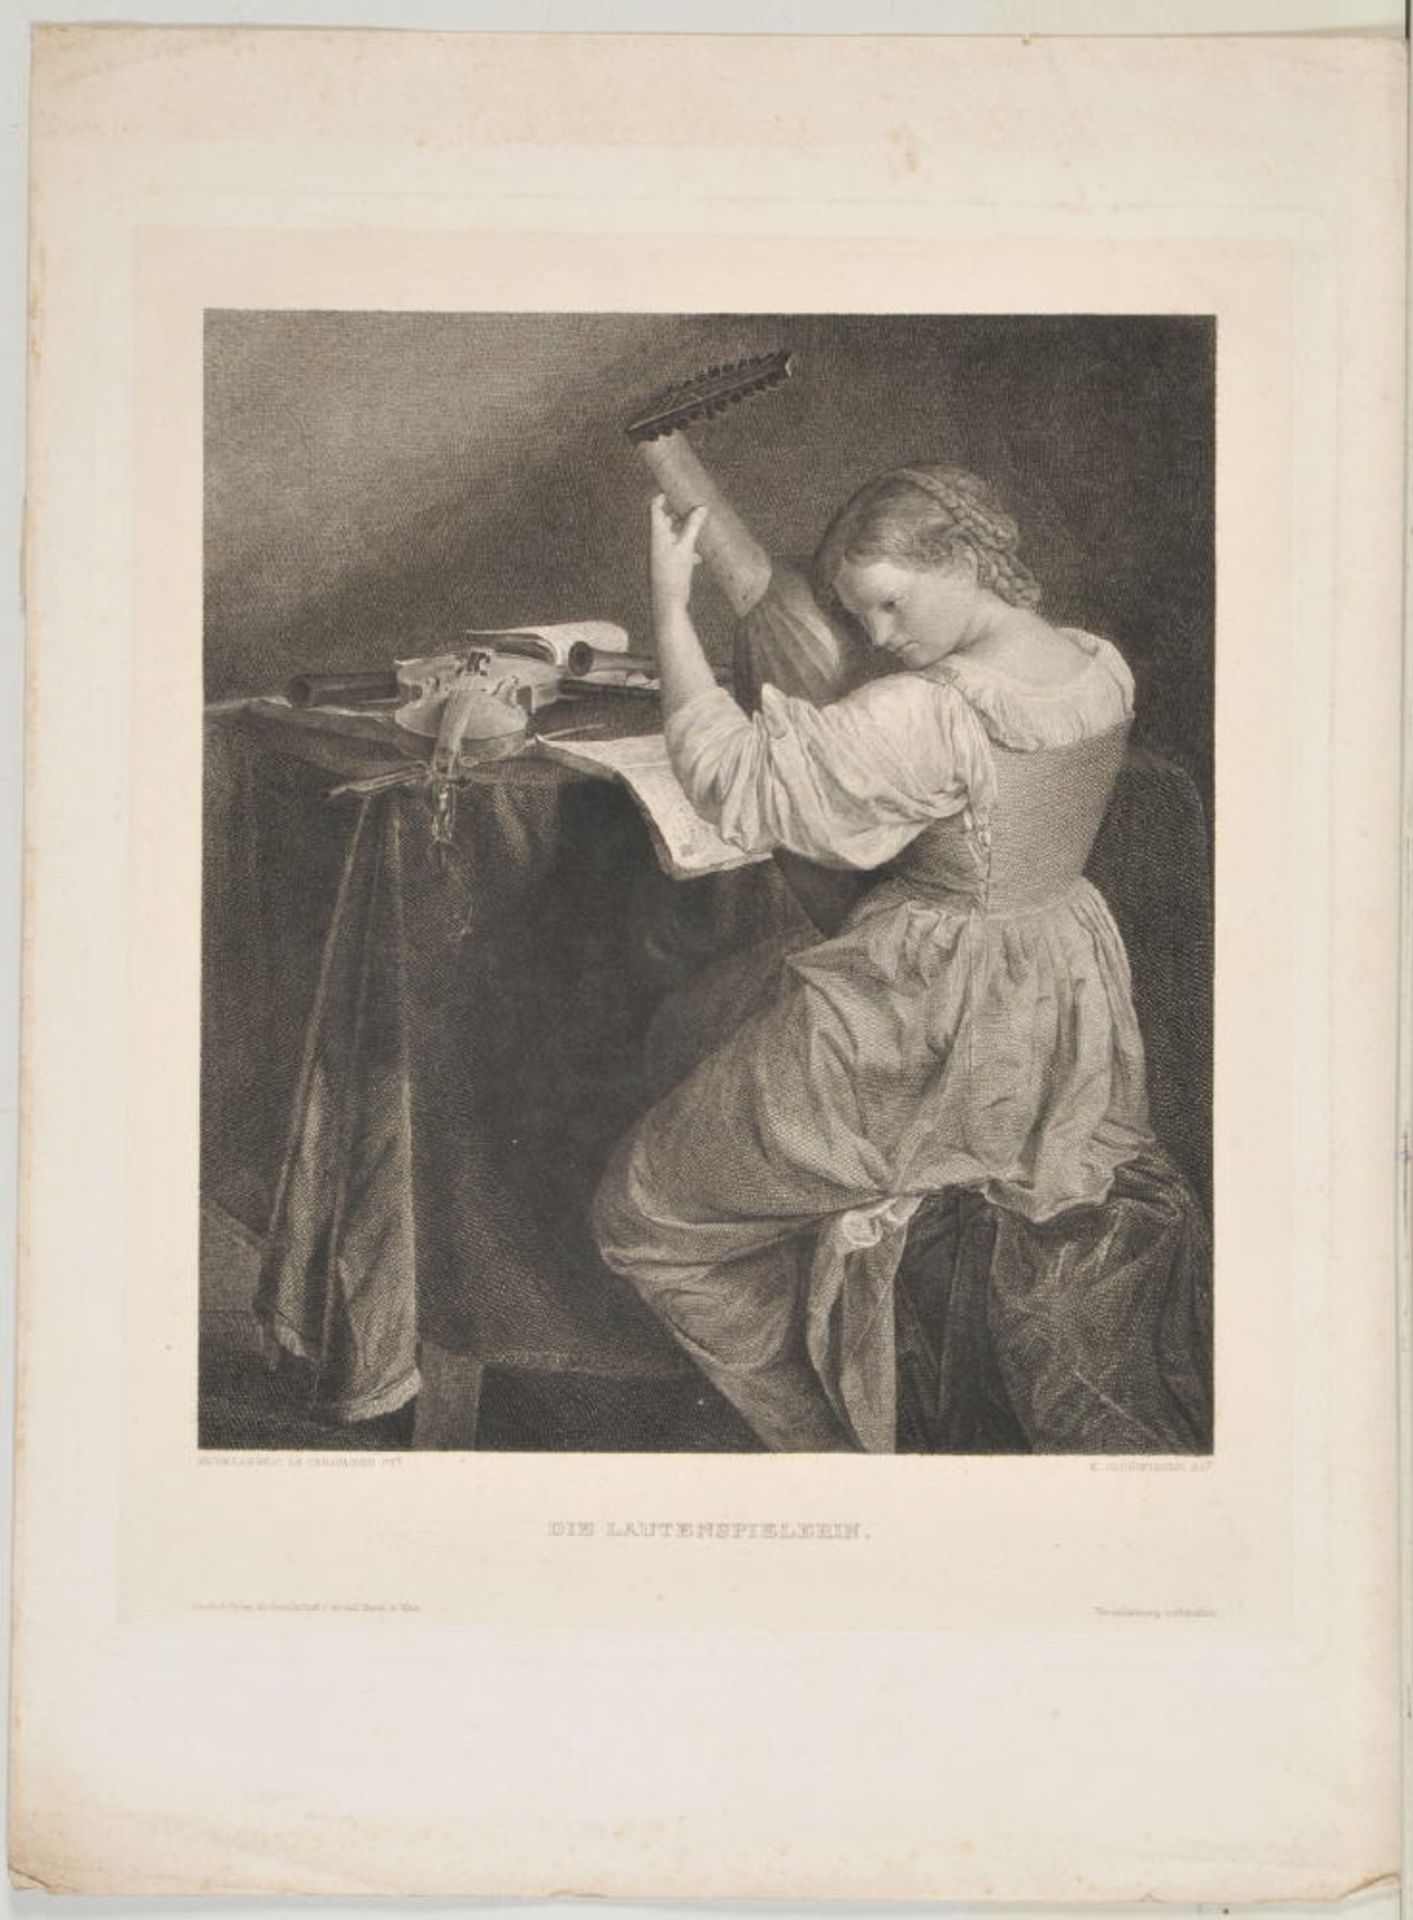 Schönbauer, K., Künstler des 19./20. Jh.Radierung, 24,5 x 22 cm, betit. " Die Lautenspielerin ",